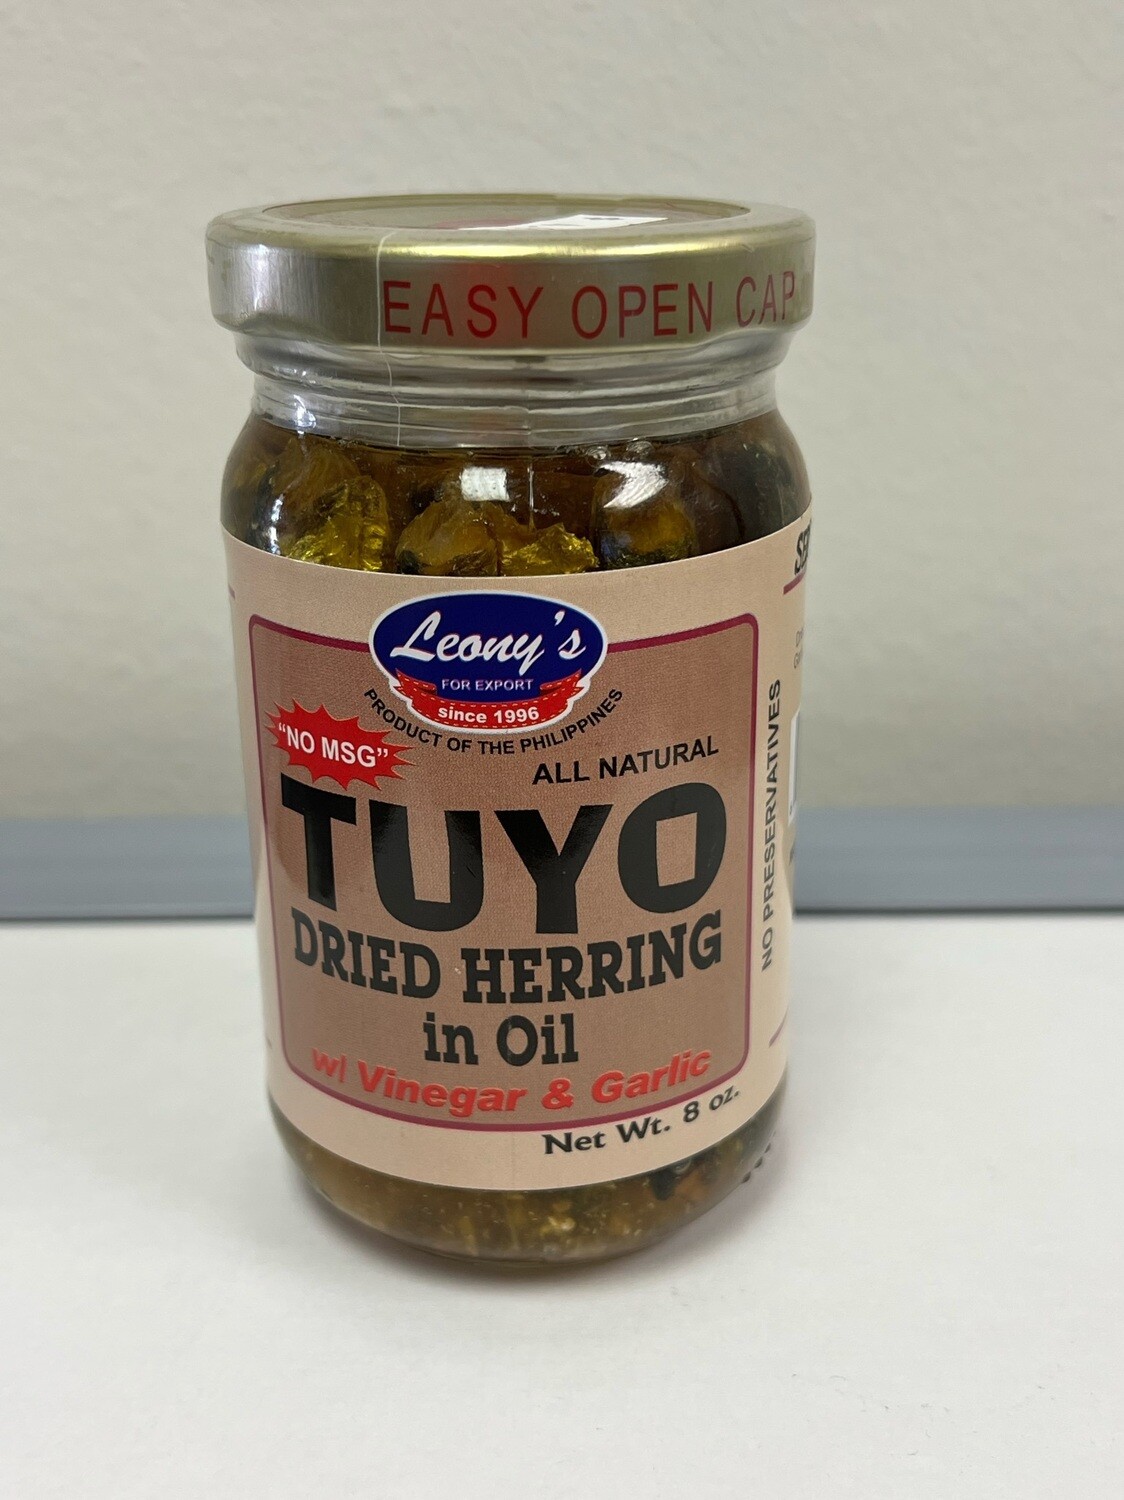 Leonys Tuyo Dried Herring Jar w/ vinegar/garlic